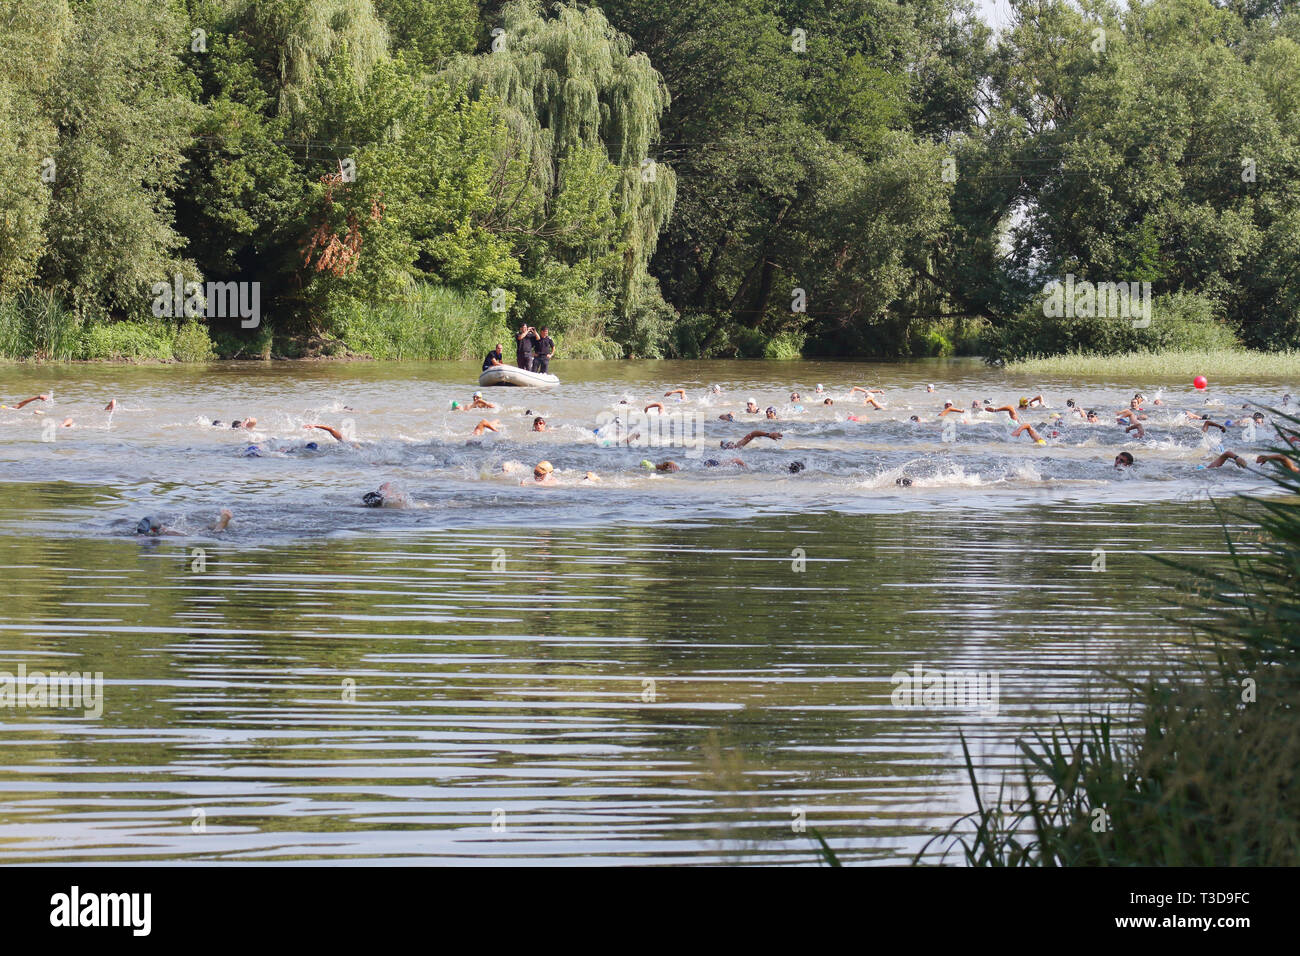 Groupe d'triathlonists la natation dans la rivière Mures au cours de la compétition nationale Banque D'Images